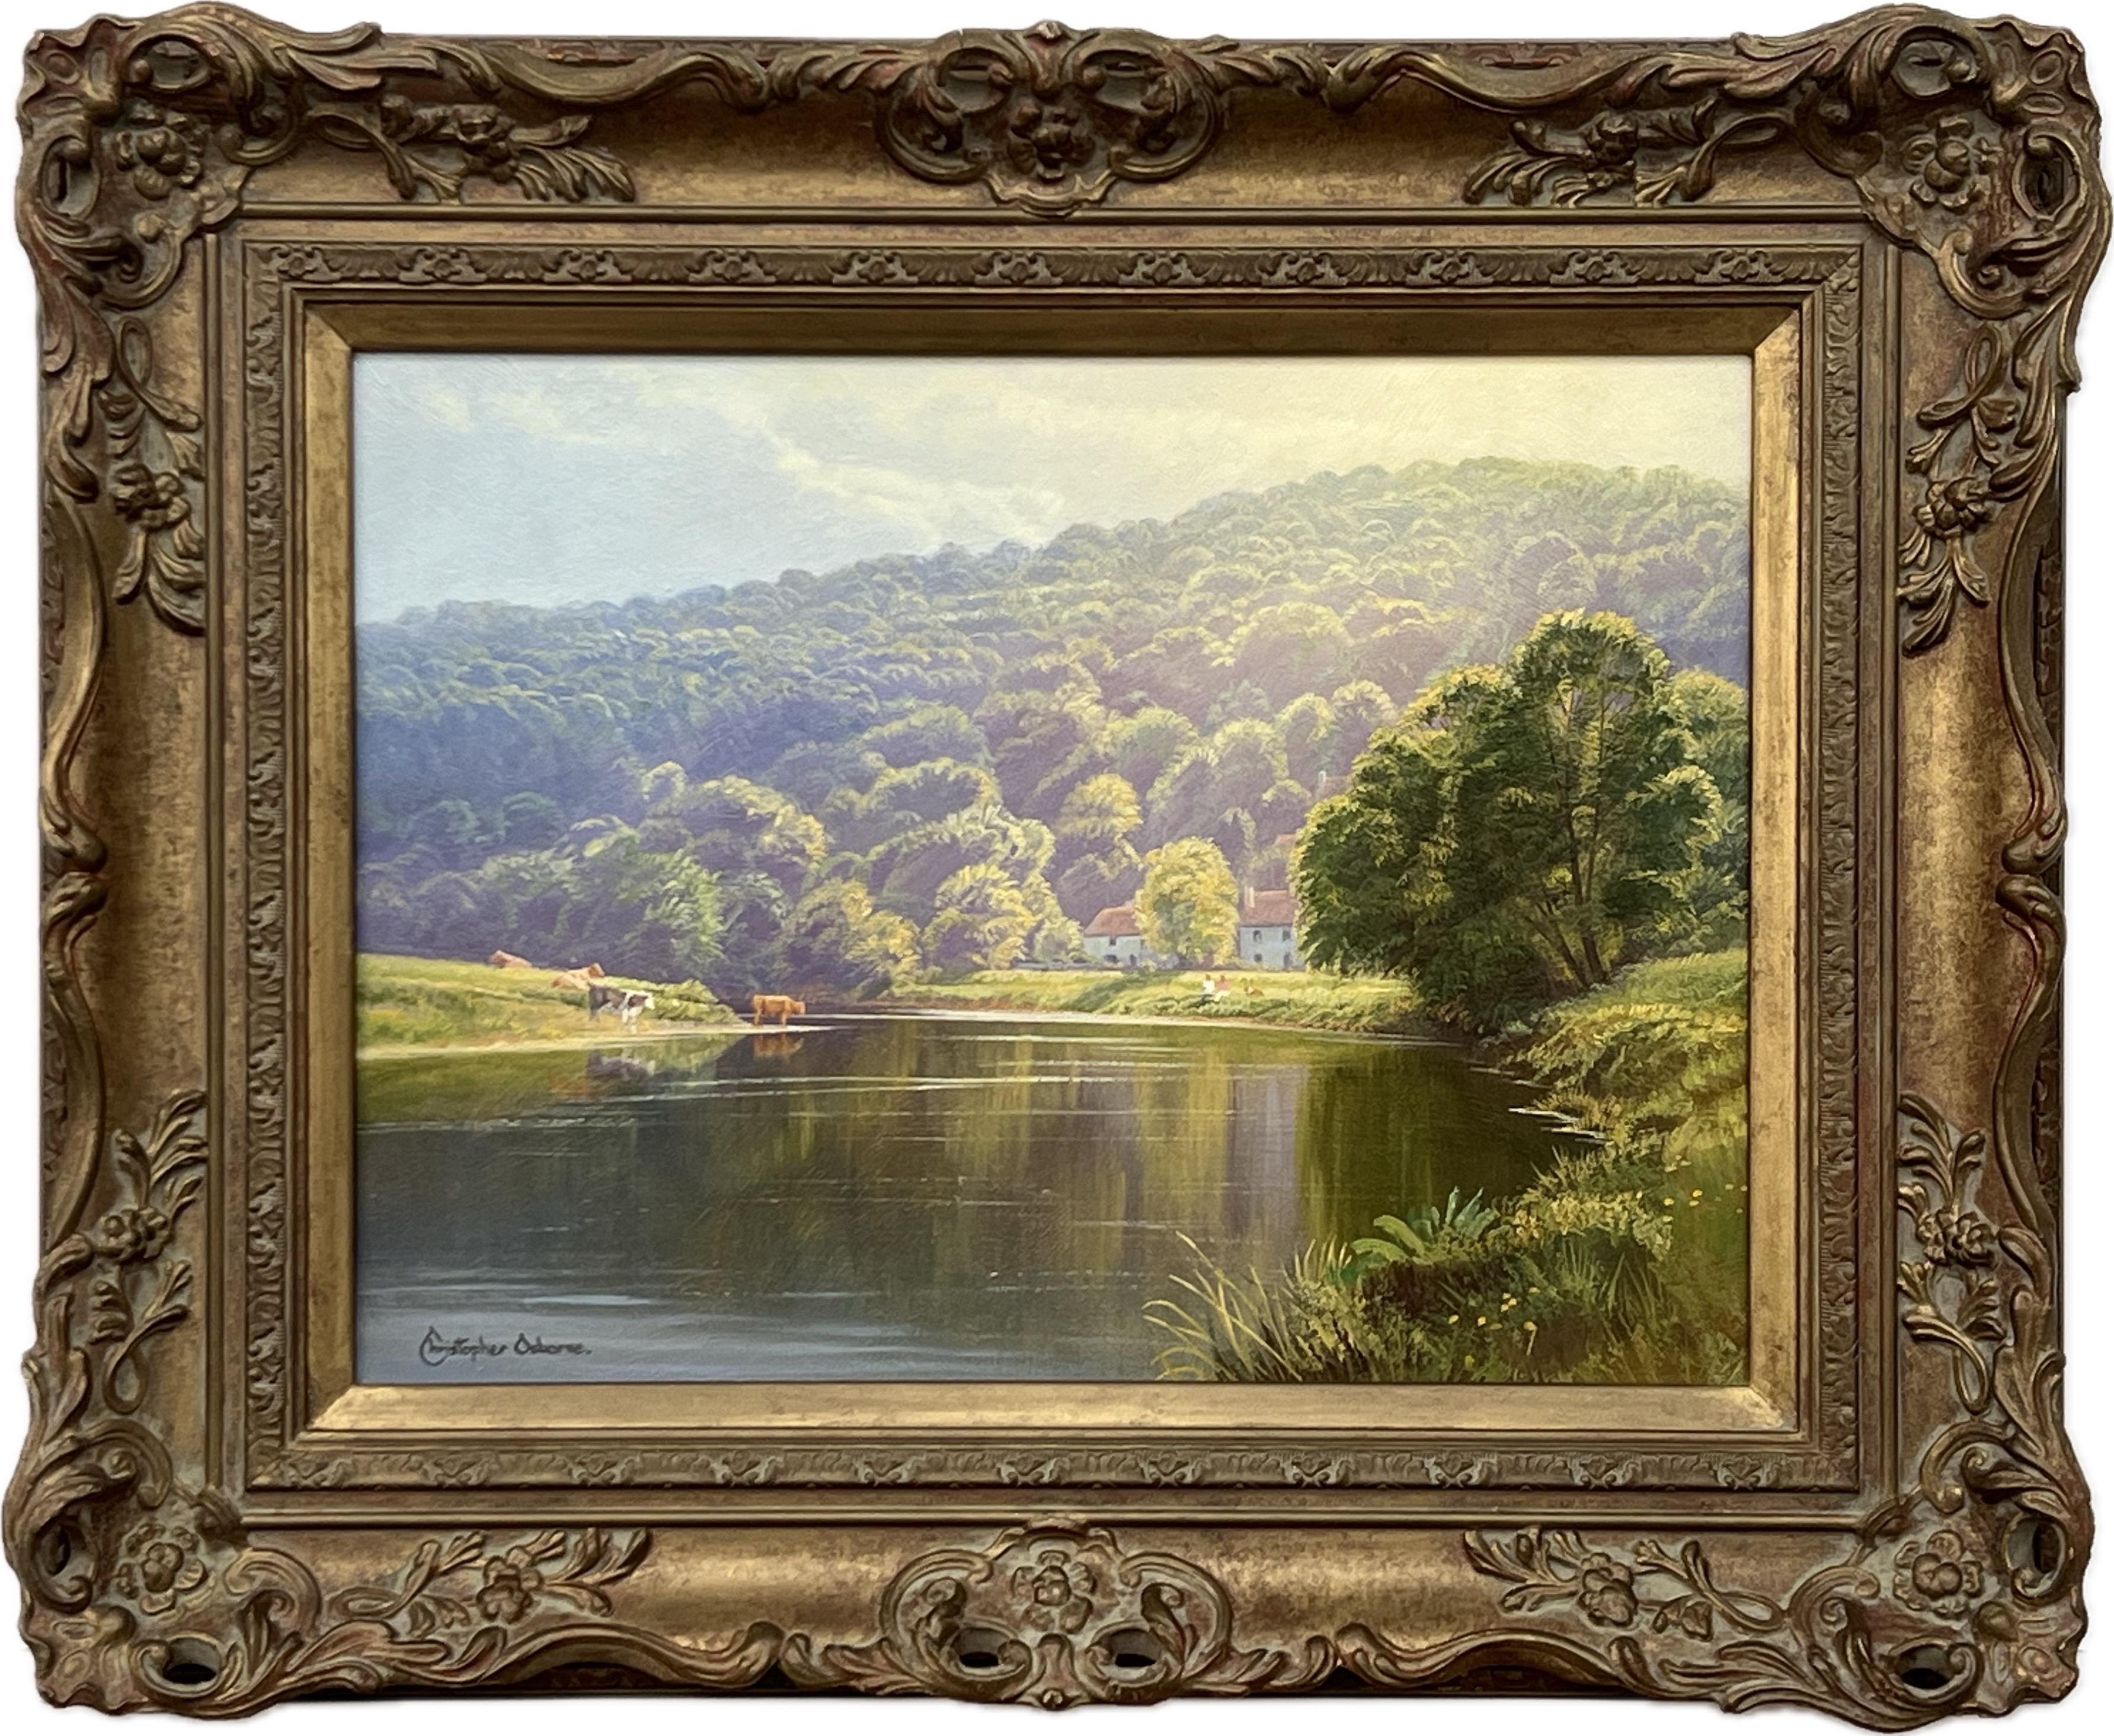 Scène d'été sur une rivière bordée d'arbres avec du bétail dans la campagne anglaise en plein soleil